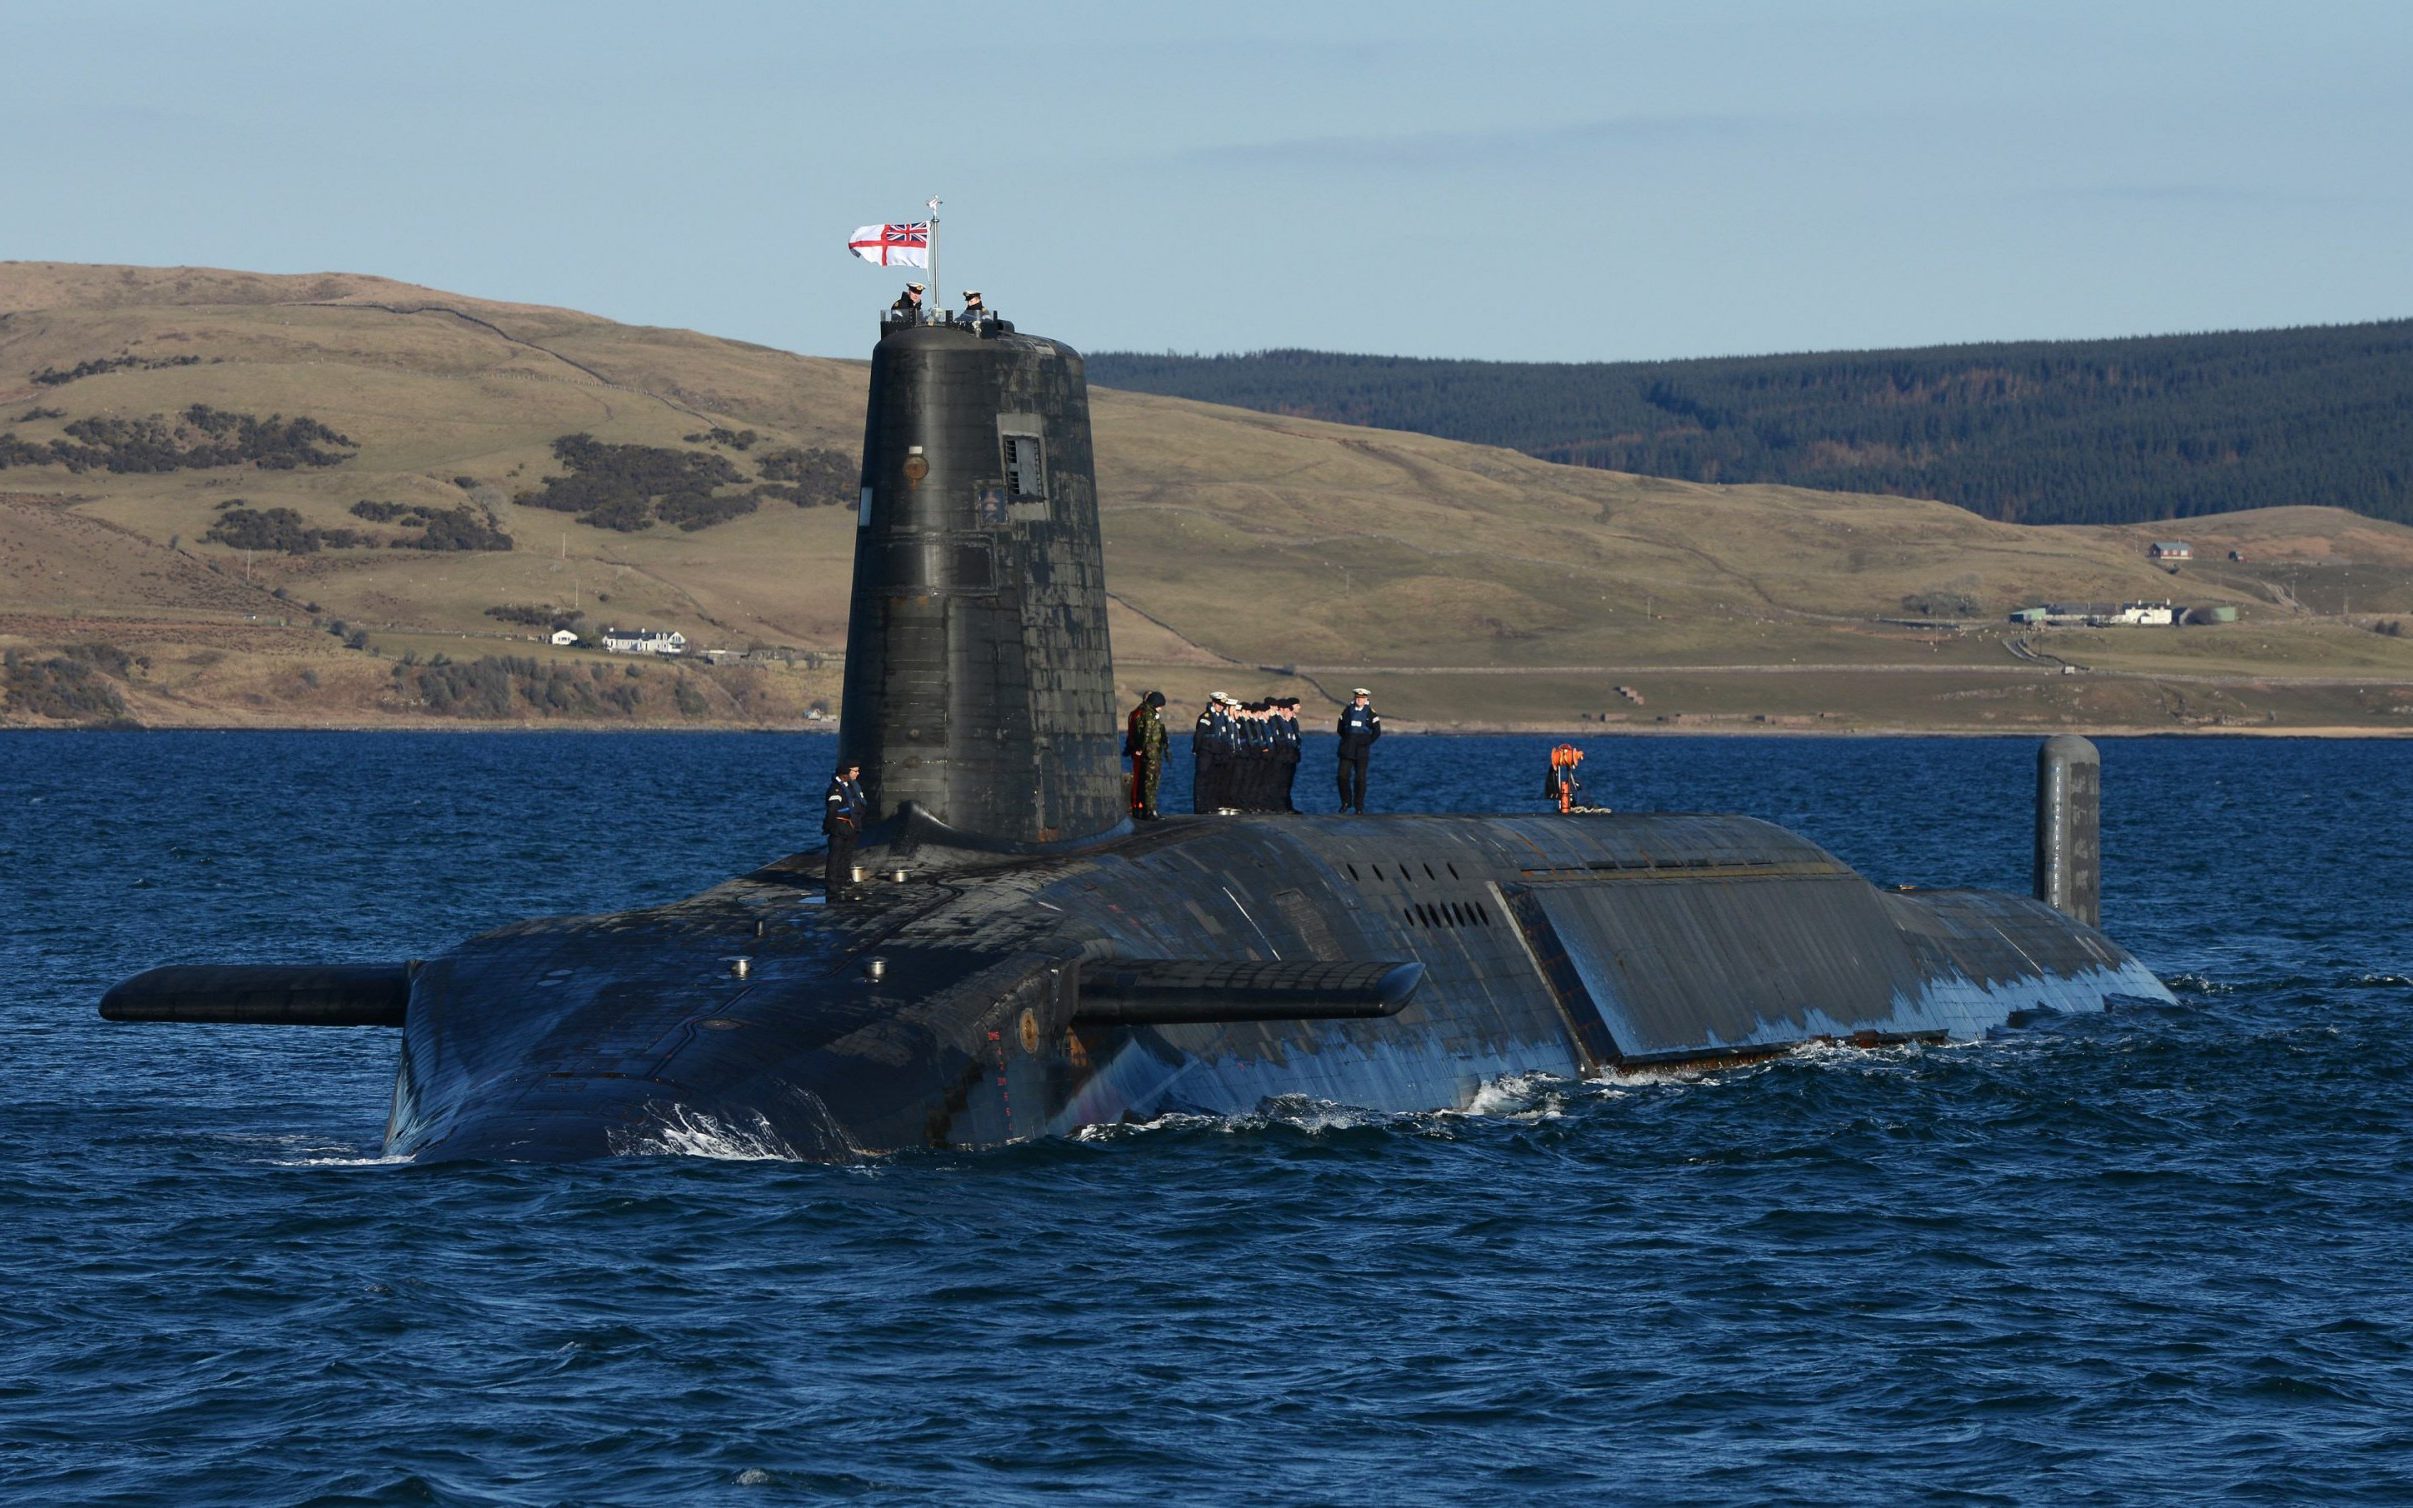 Офицеры ВМС Британии через фитнес-приложение раскрыли секретные данные о местах базирования и перемещениях несущих ядерное оружие подлодок